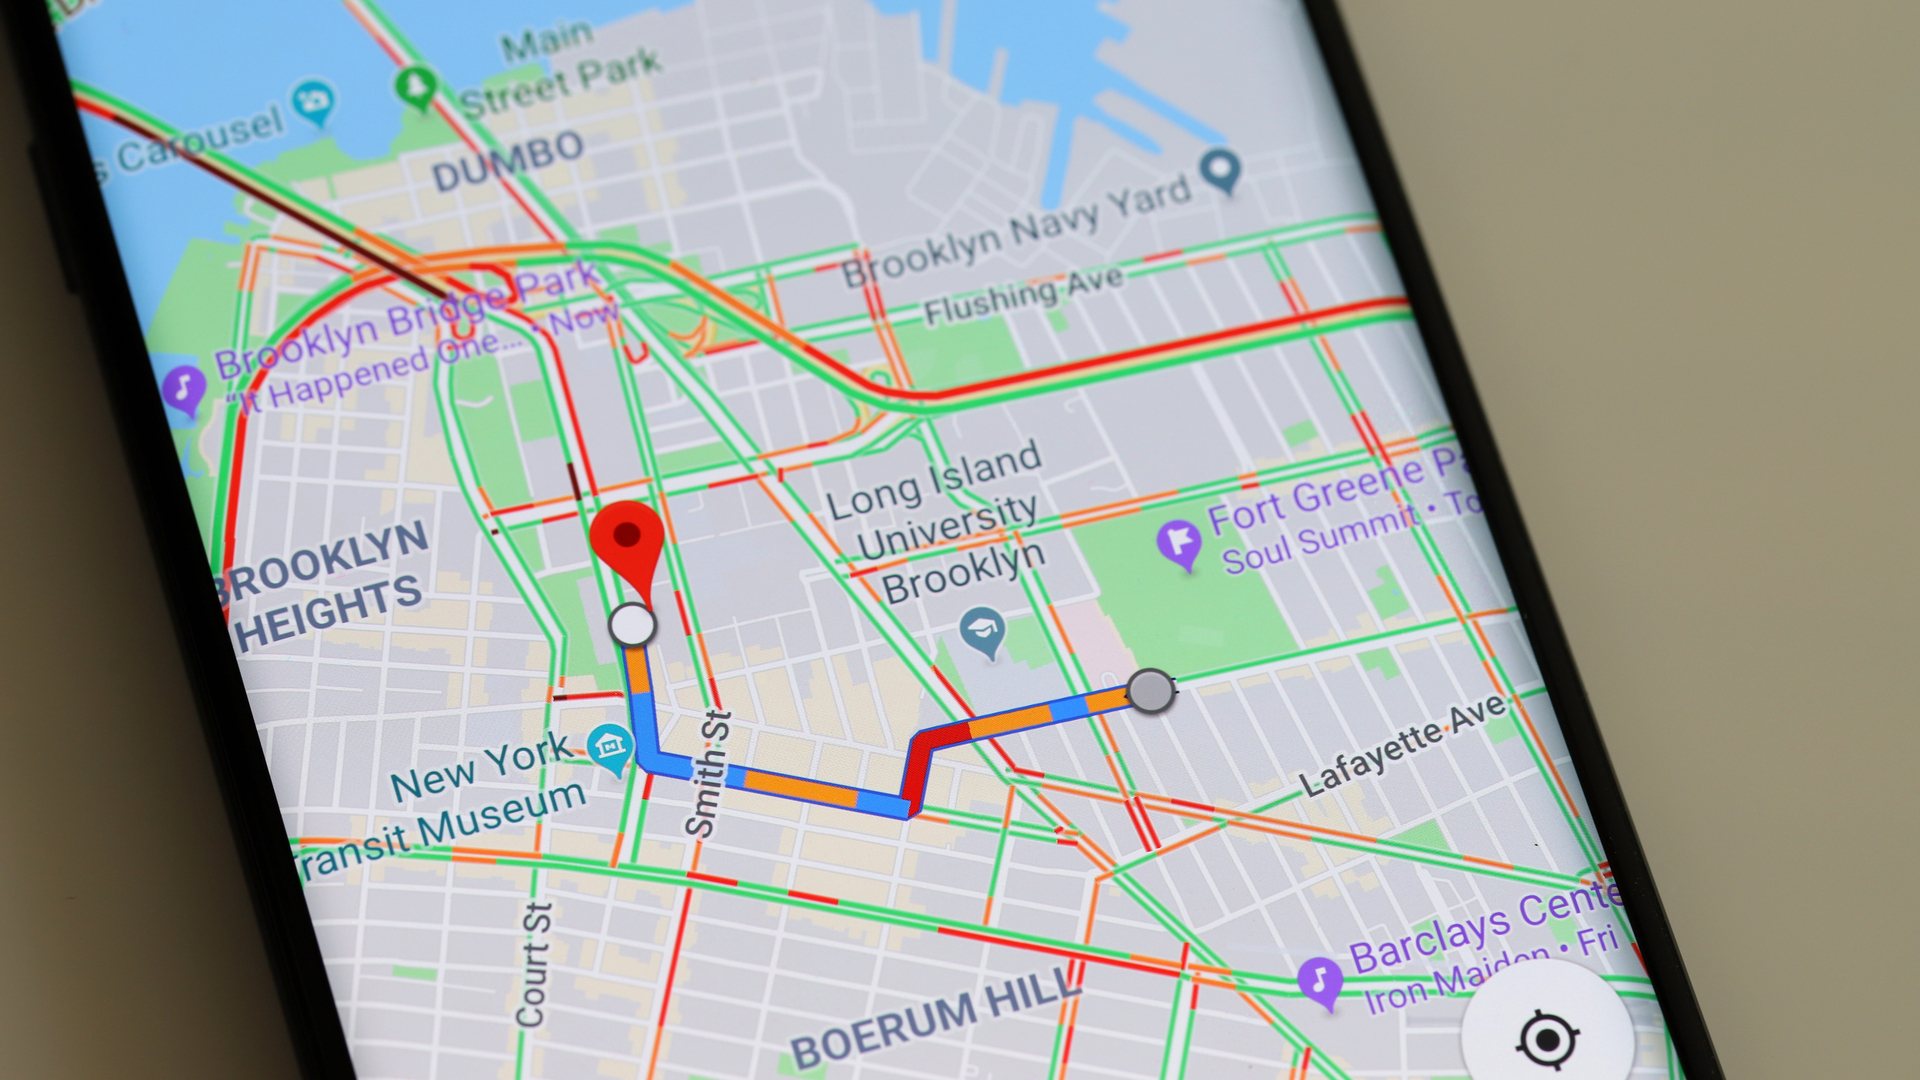 Teléfono Android con Google Maps: cómo deshabilitar el seguimiento de ubicación en Android